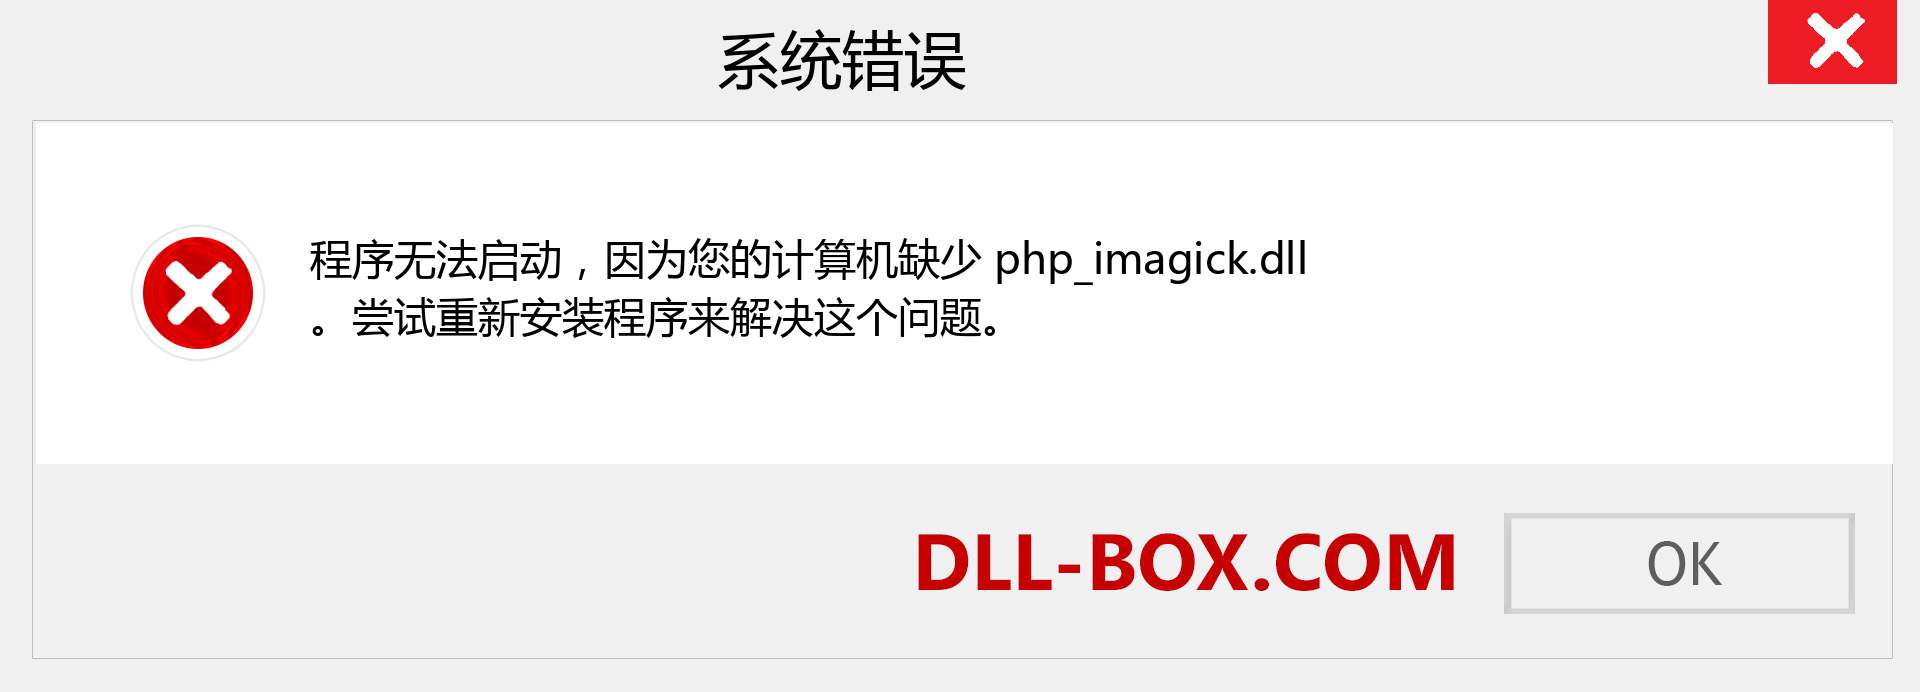 php_imagick.dll 文件丢失？。 适用于 Windows 7、8、10 的下载 - 修复 Windows、照片、图像上的 php_imagick dll 丢失错误